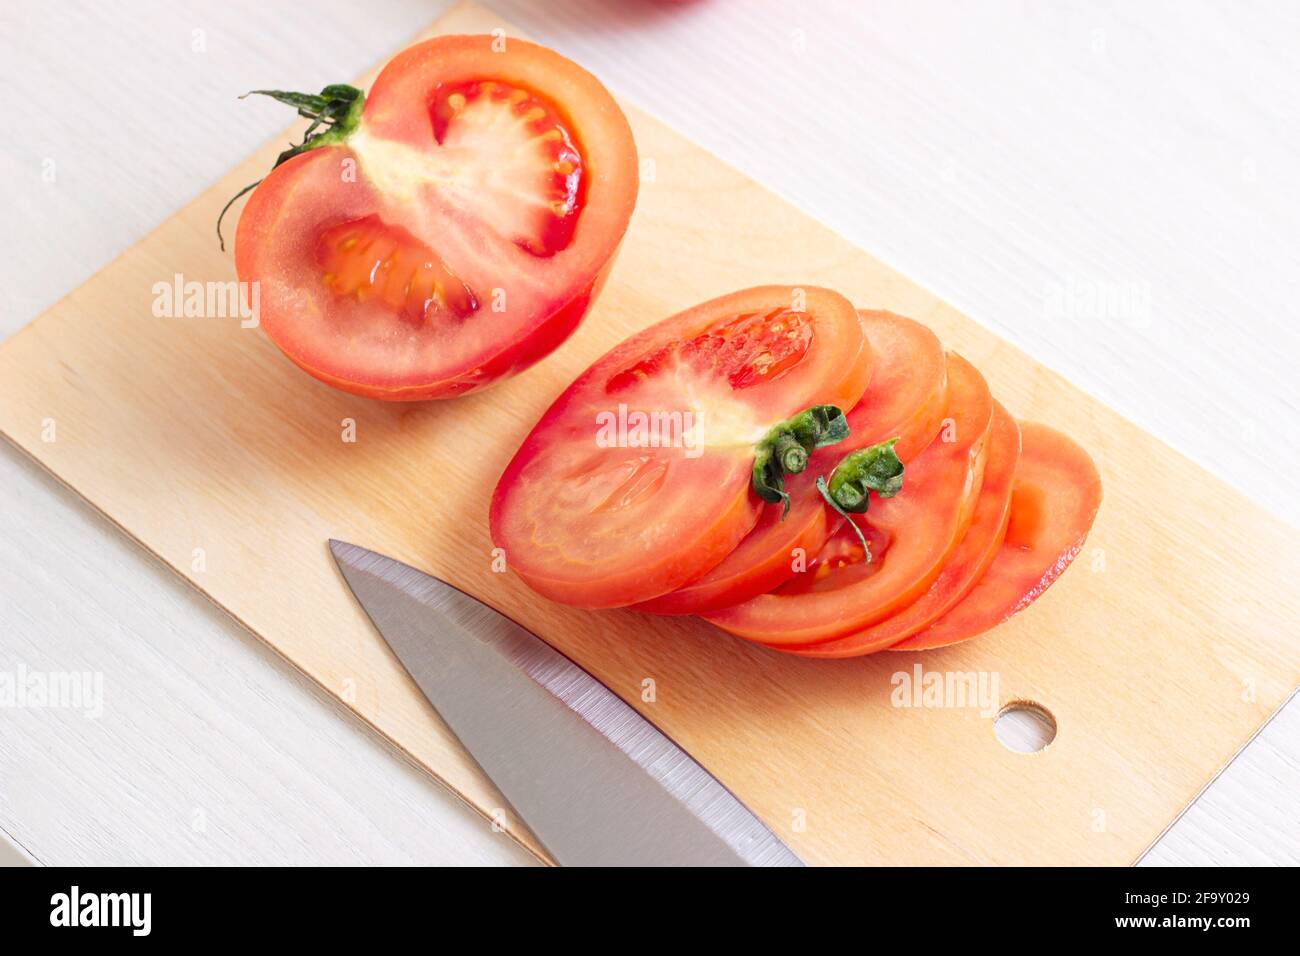 Pomodori rossi crudi freschi e brillanti tagliati con coltello su tagliere in legno in cucina su sfondo chiaro. Foto Stock